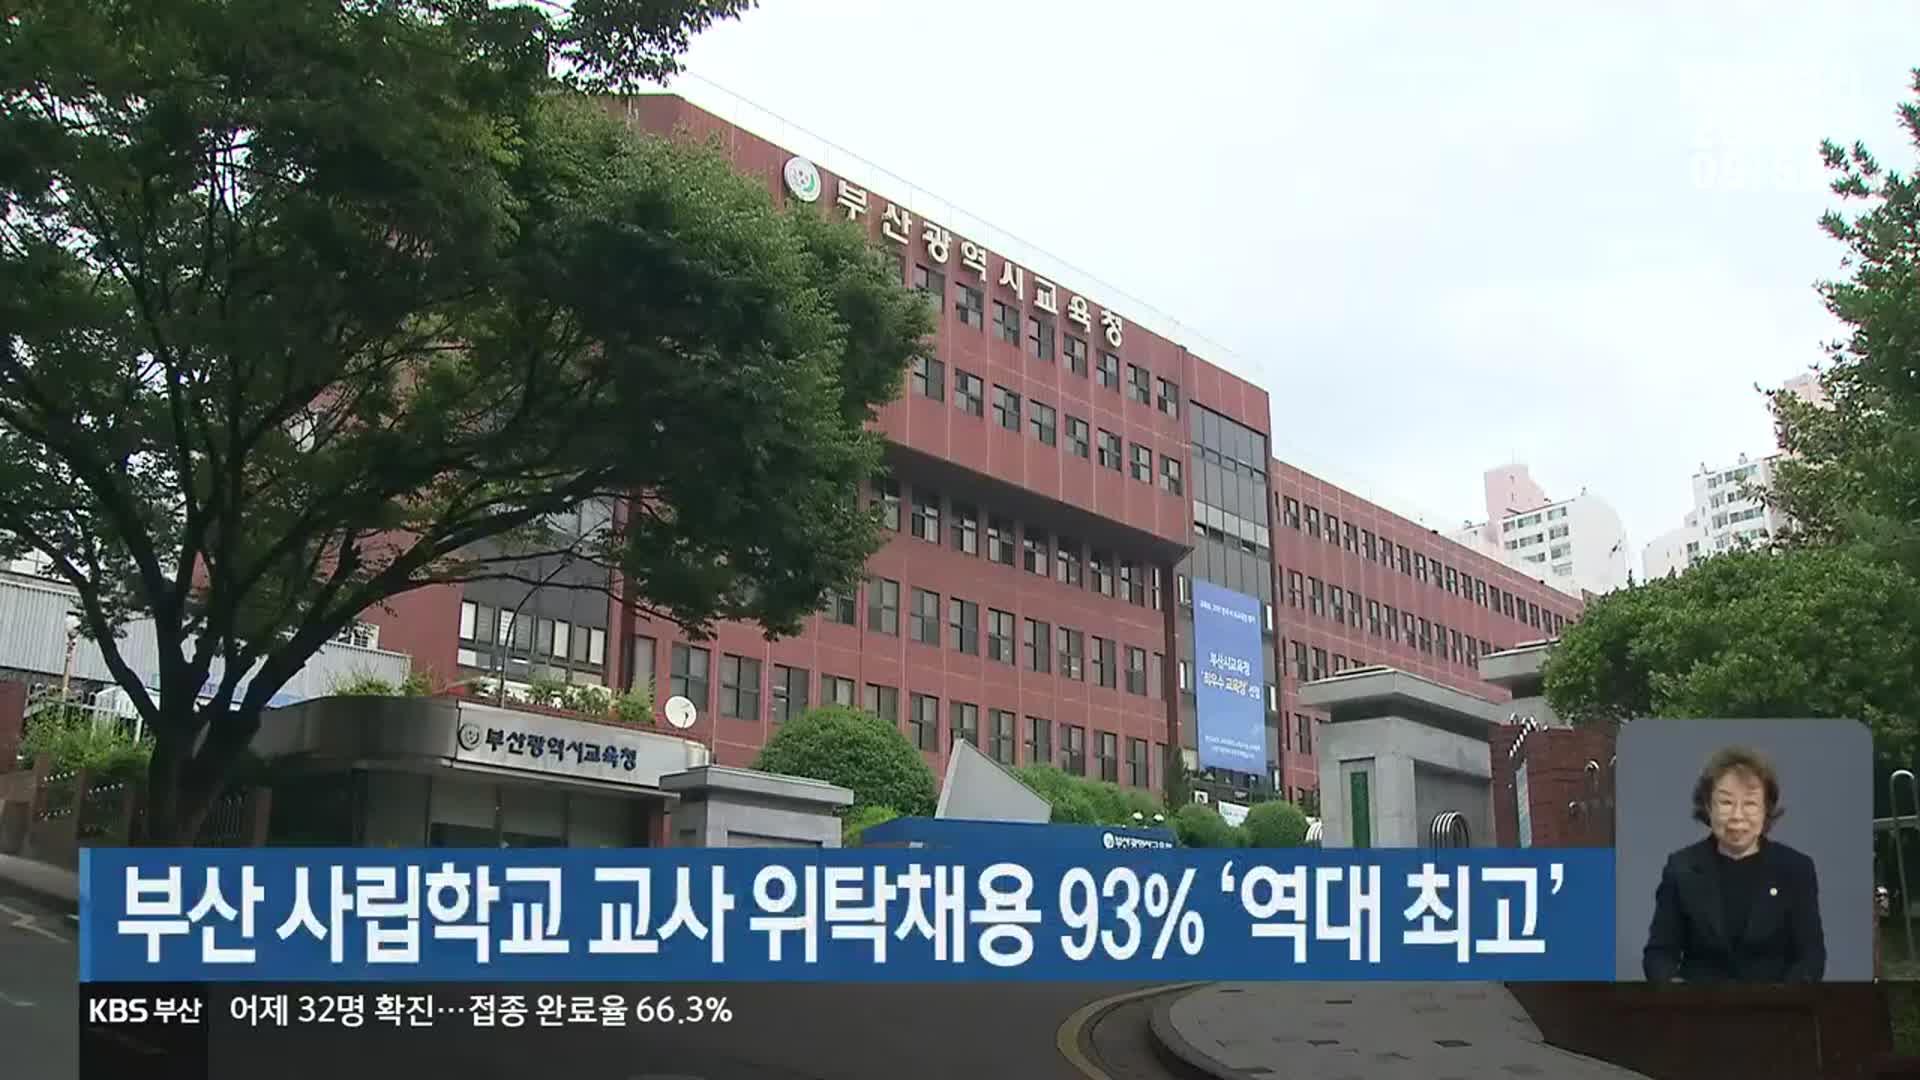 부산 사립학교 교사 위탁채용 93% ‘역대 최고’